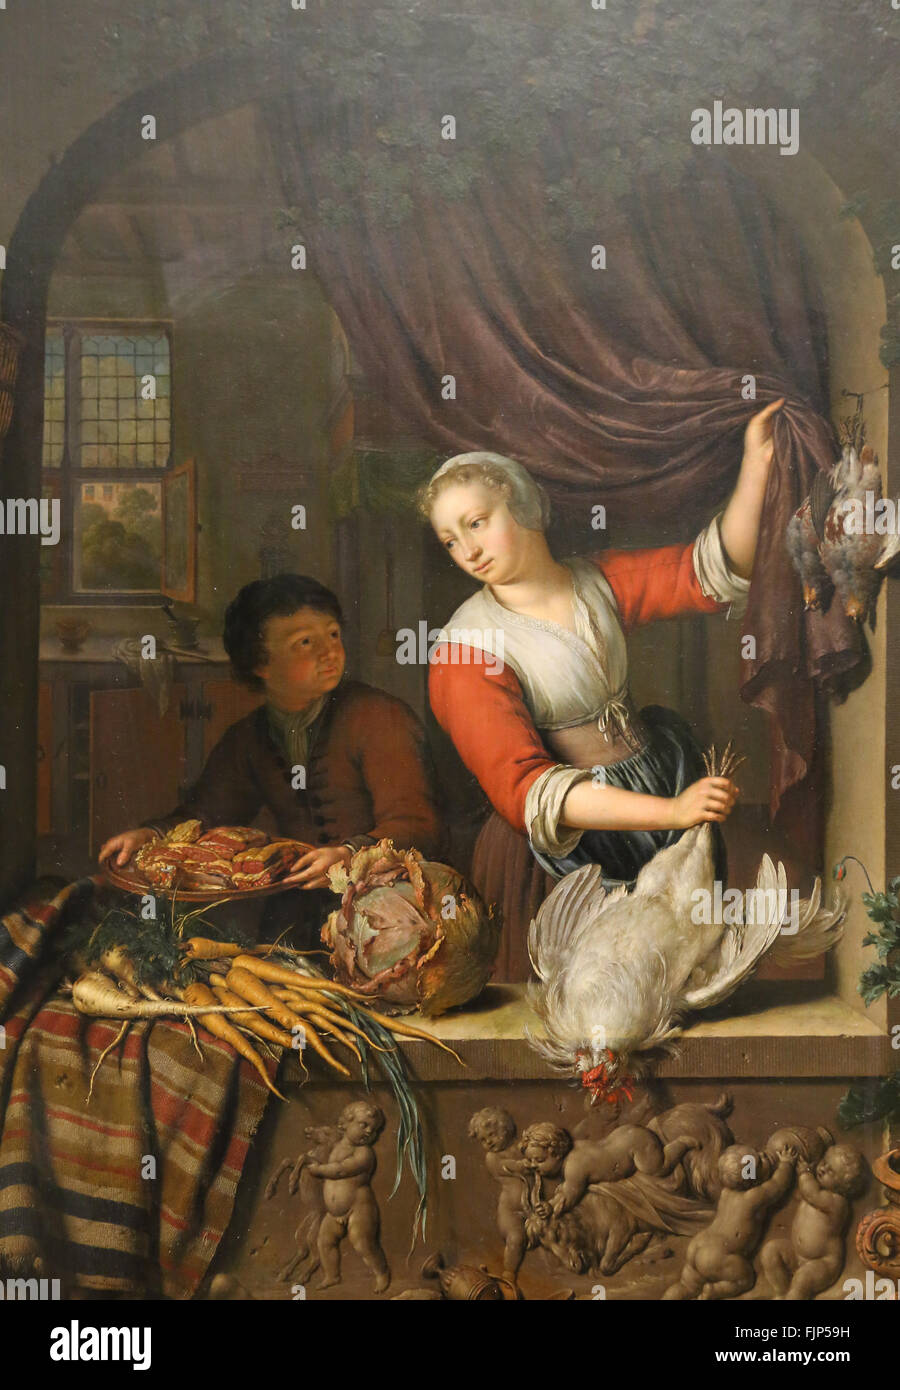 Willem van Mieris (1662-1747). Maler aus dem Norden der Niederlande. Der Koch, 1715. Louvre-Museum. Paris. Frankreich. Stockfoto